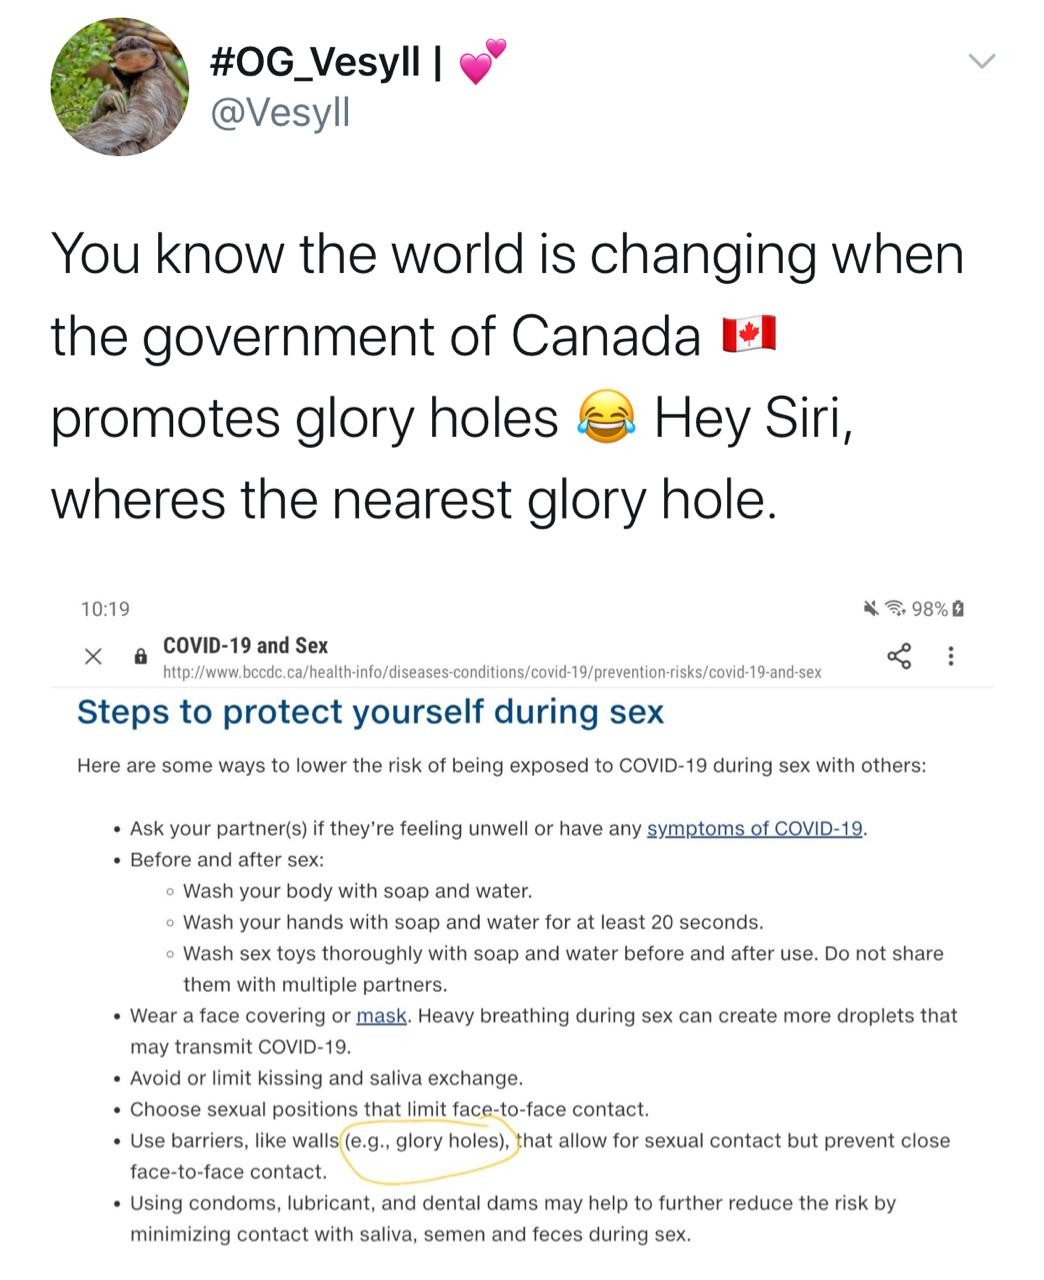 Governo canadense sugere uso de Glory Holes para prática segura de sexo na pandemia (Foto: Reprodução/Twitter)